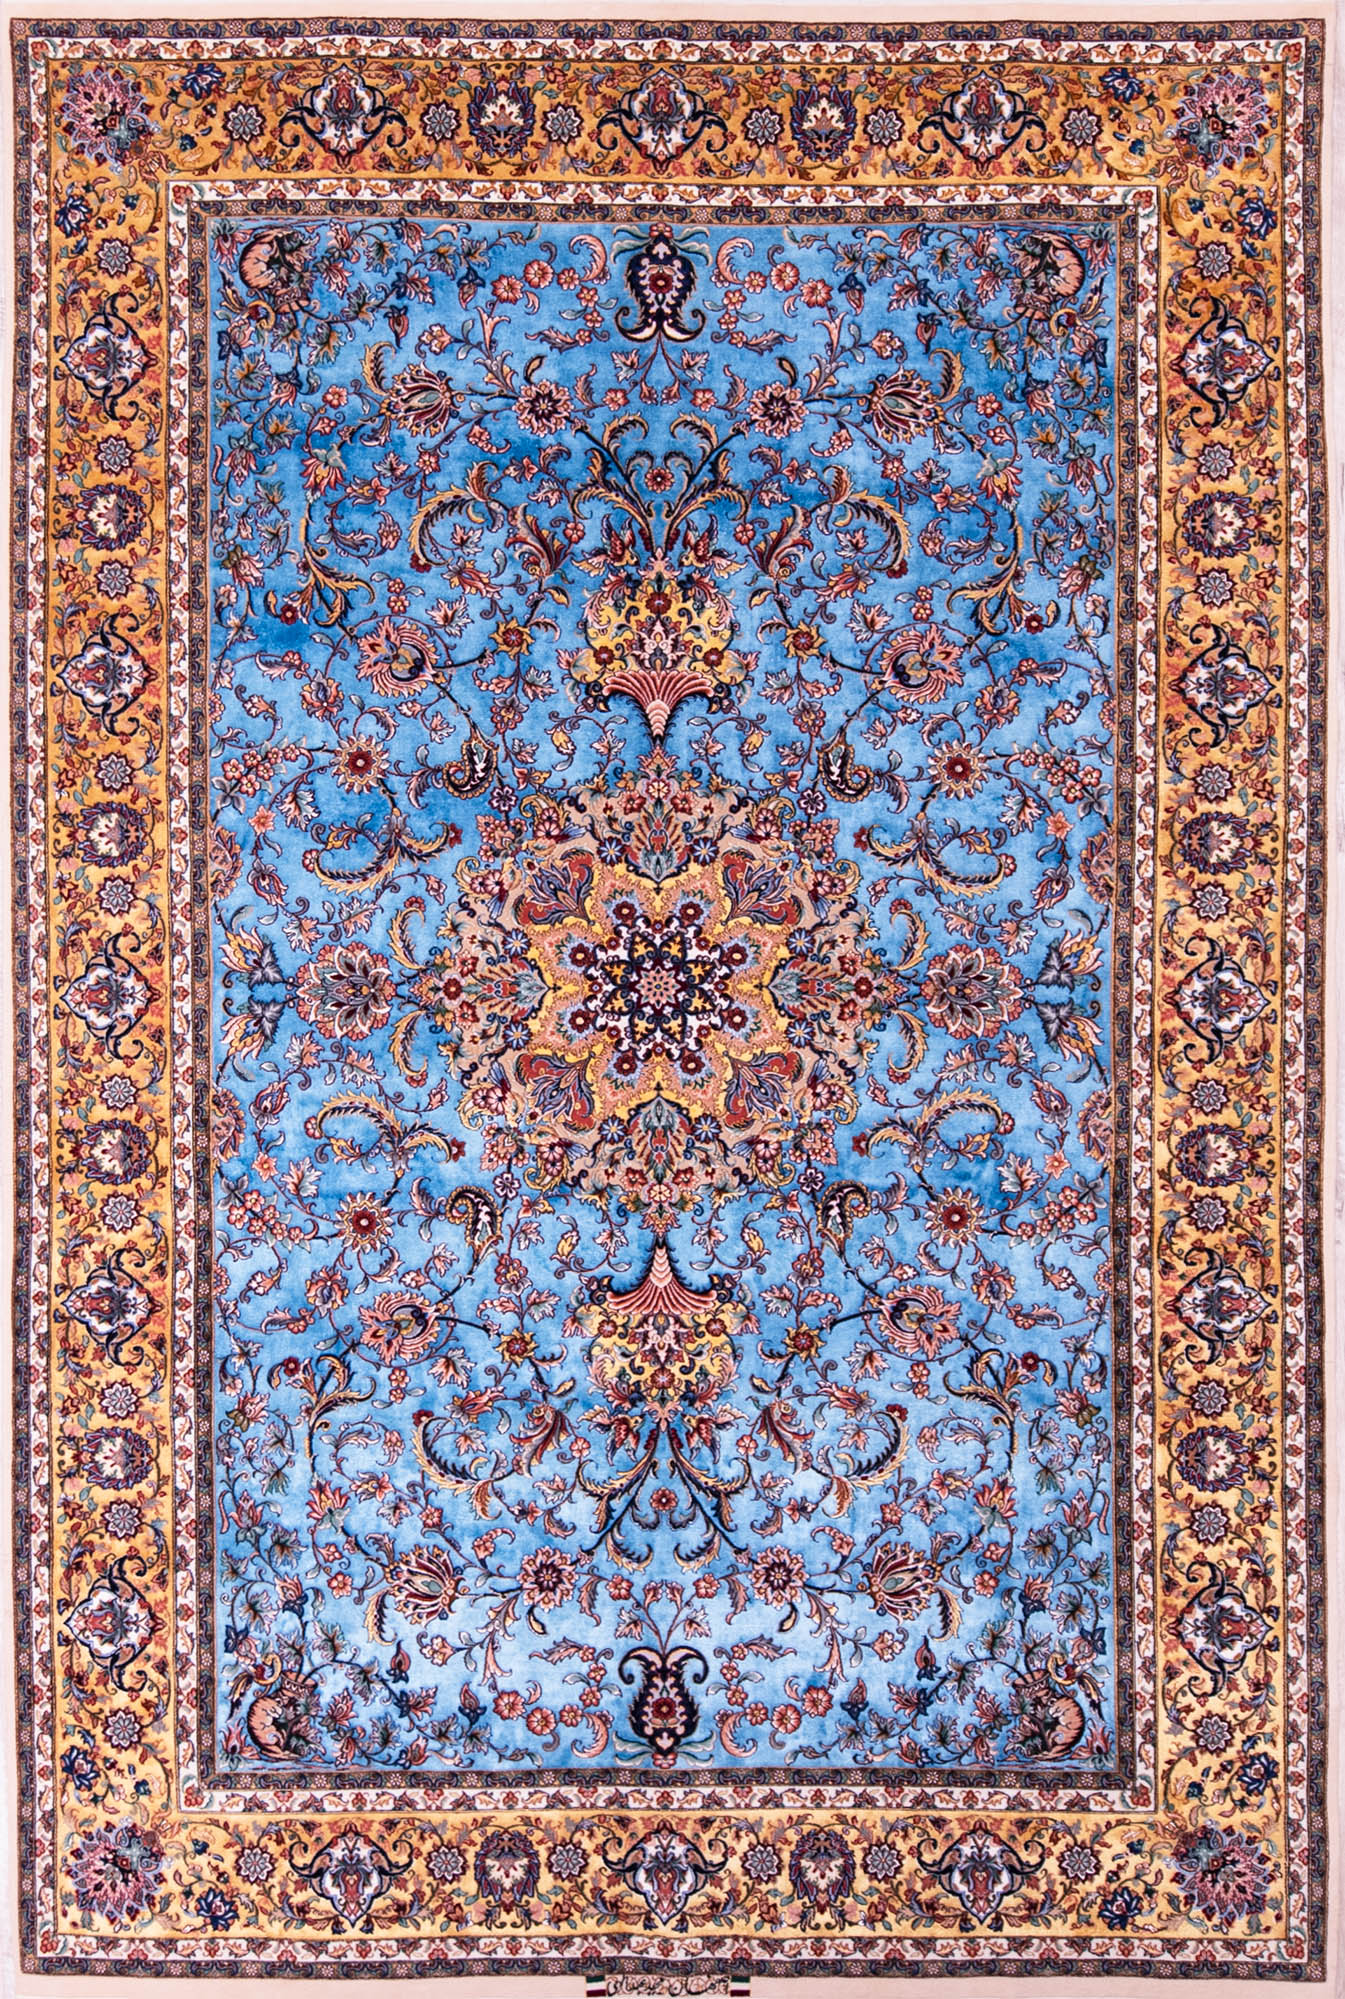 Iranian Carpet Blue Rugs Esfahan Carpets Beautiful